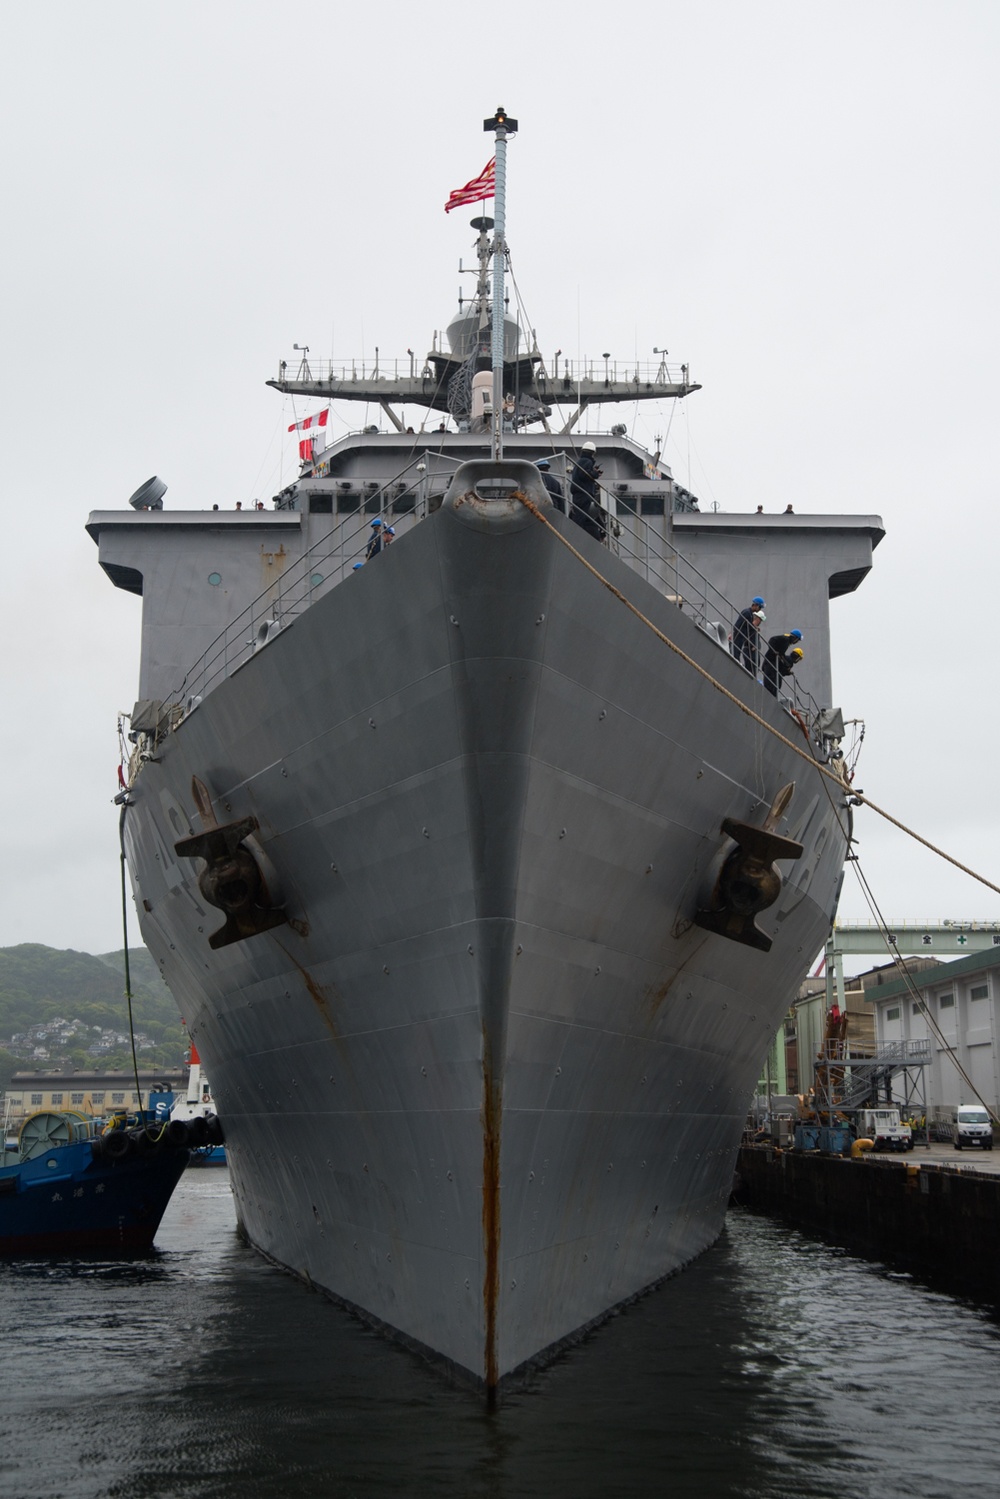 USS Ashland Returns to Sasebo